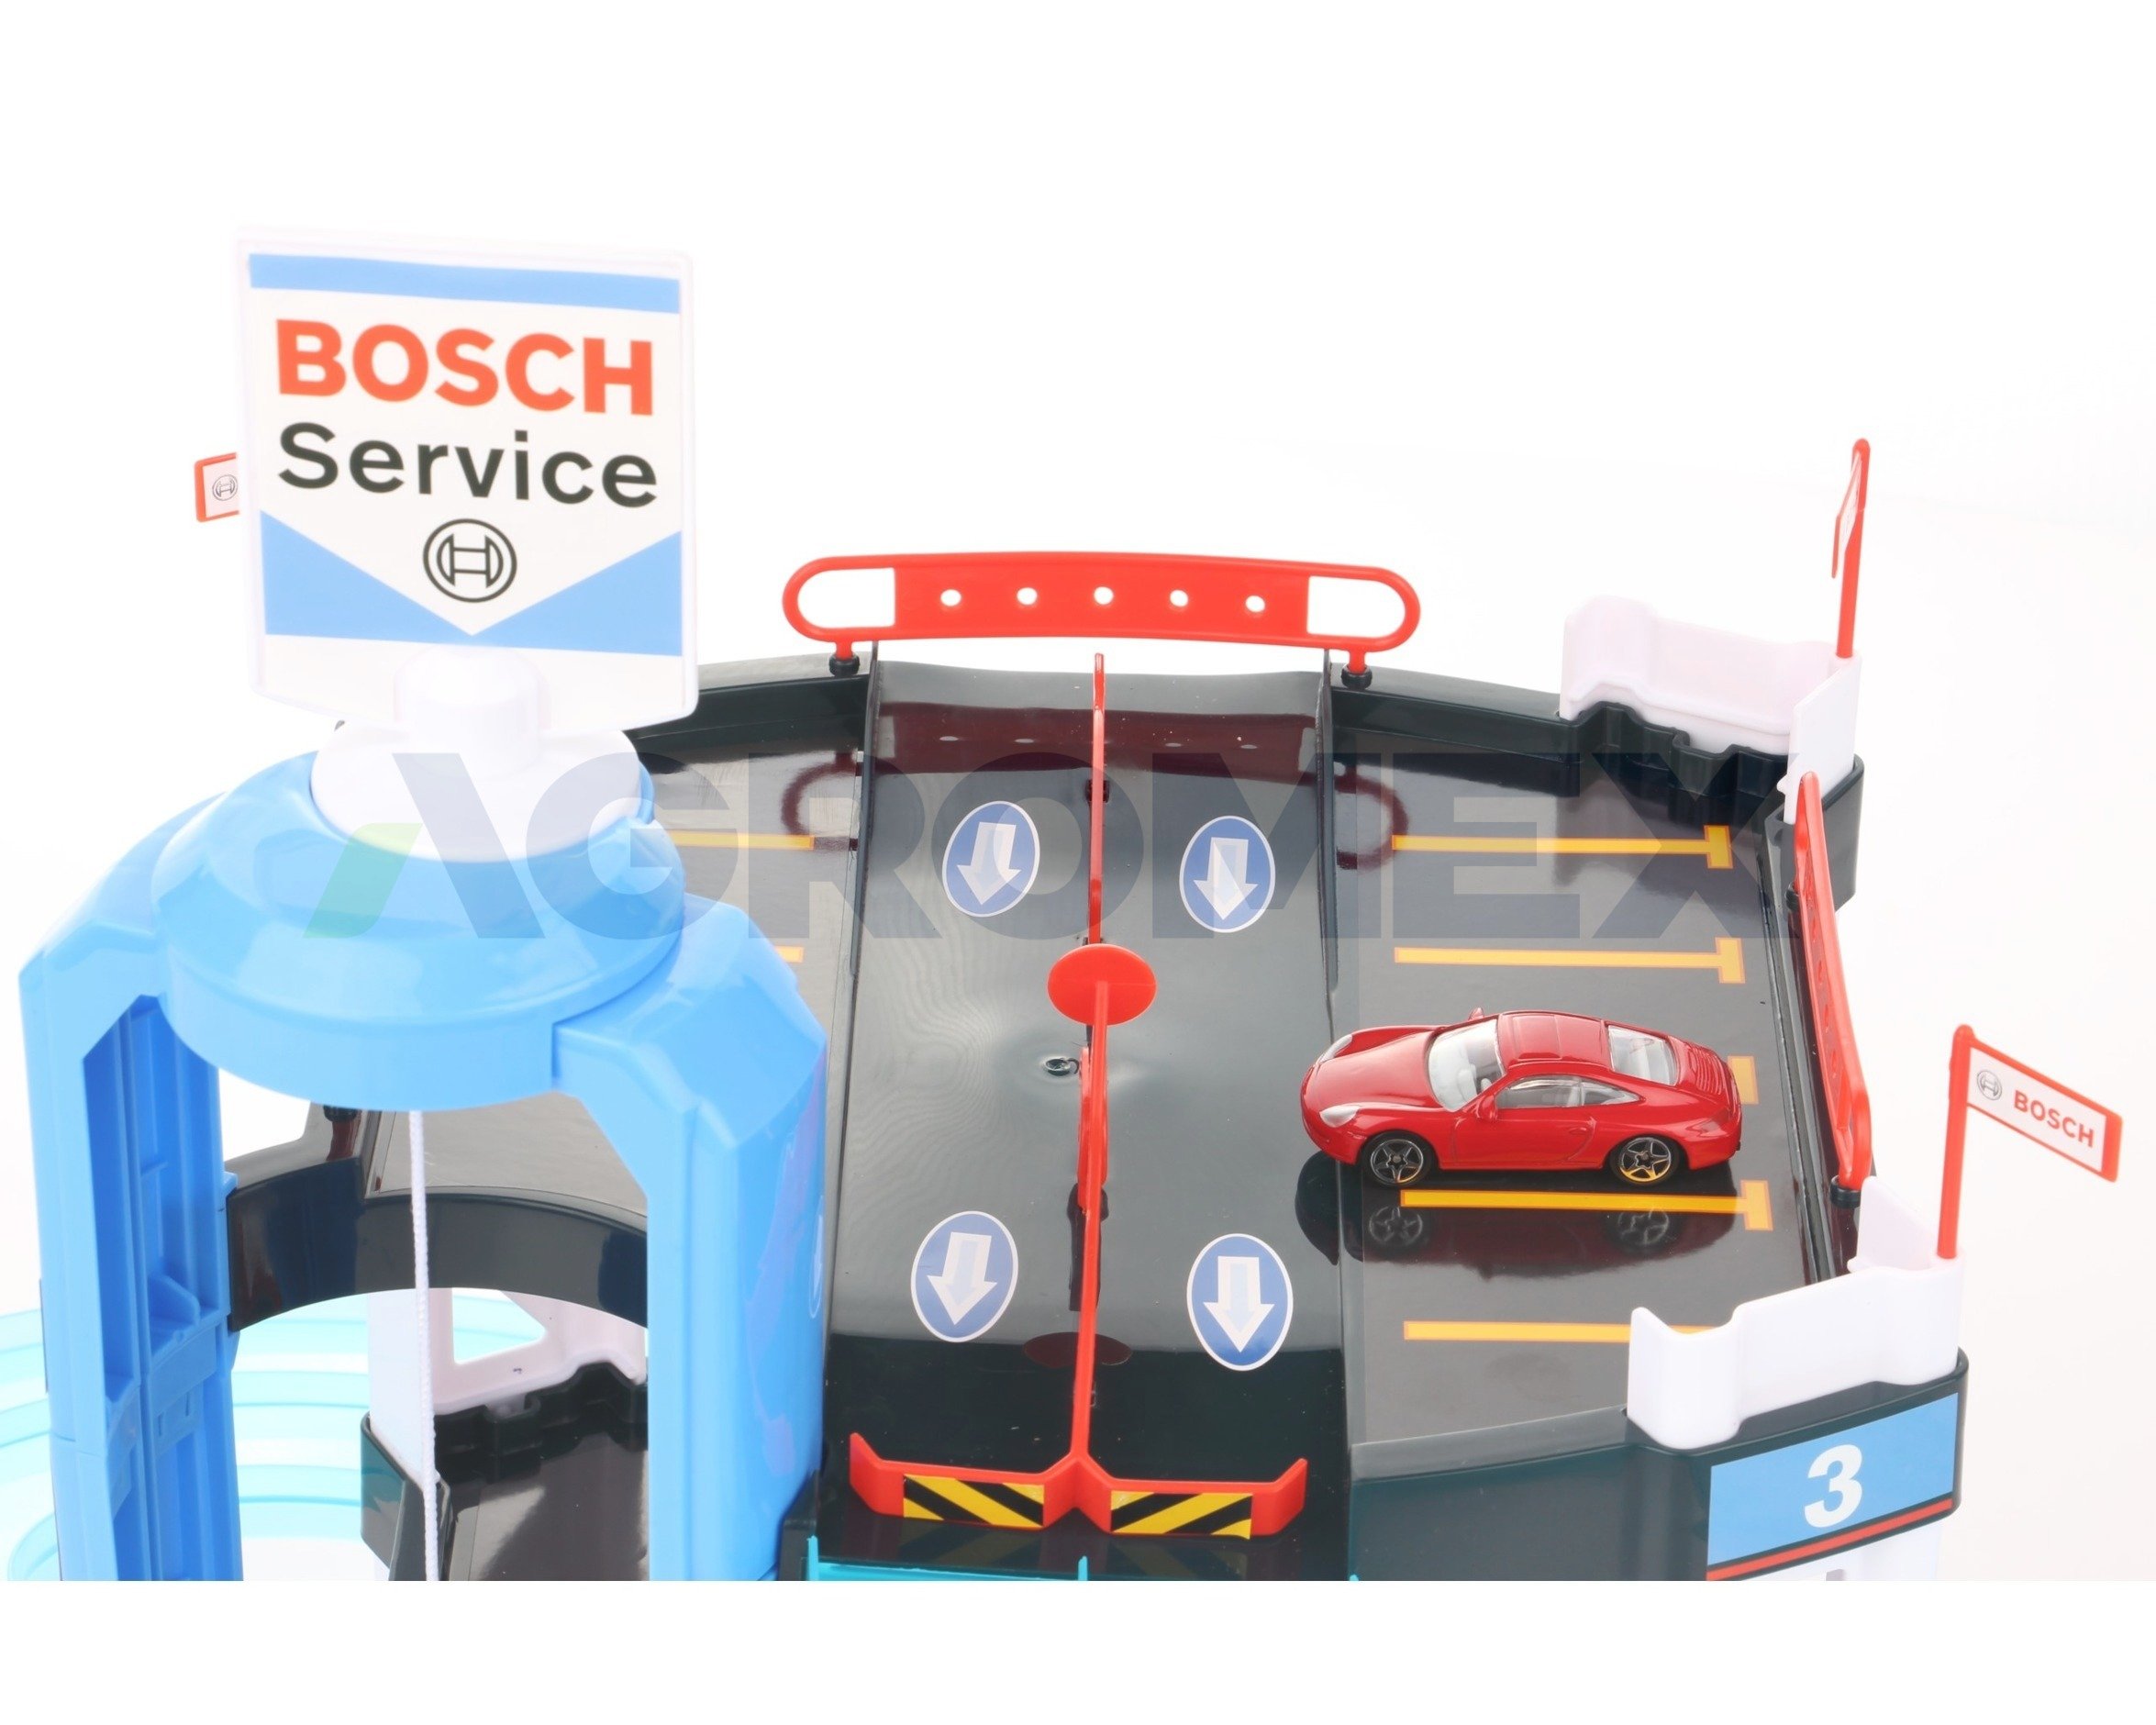 Parking garaż samochodowy Bosch Klein 2811 3 poziomy z